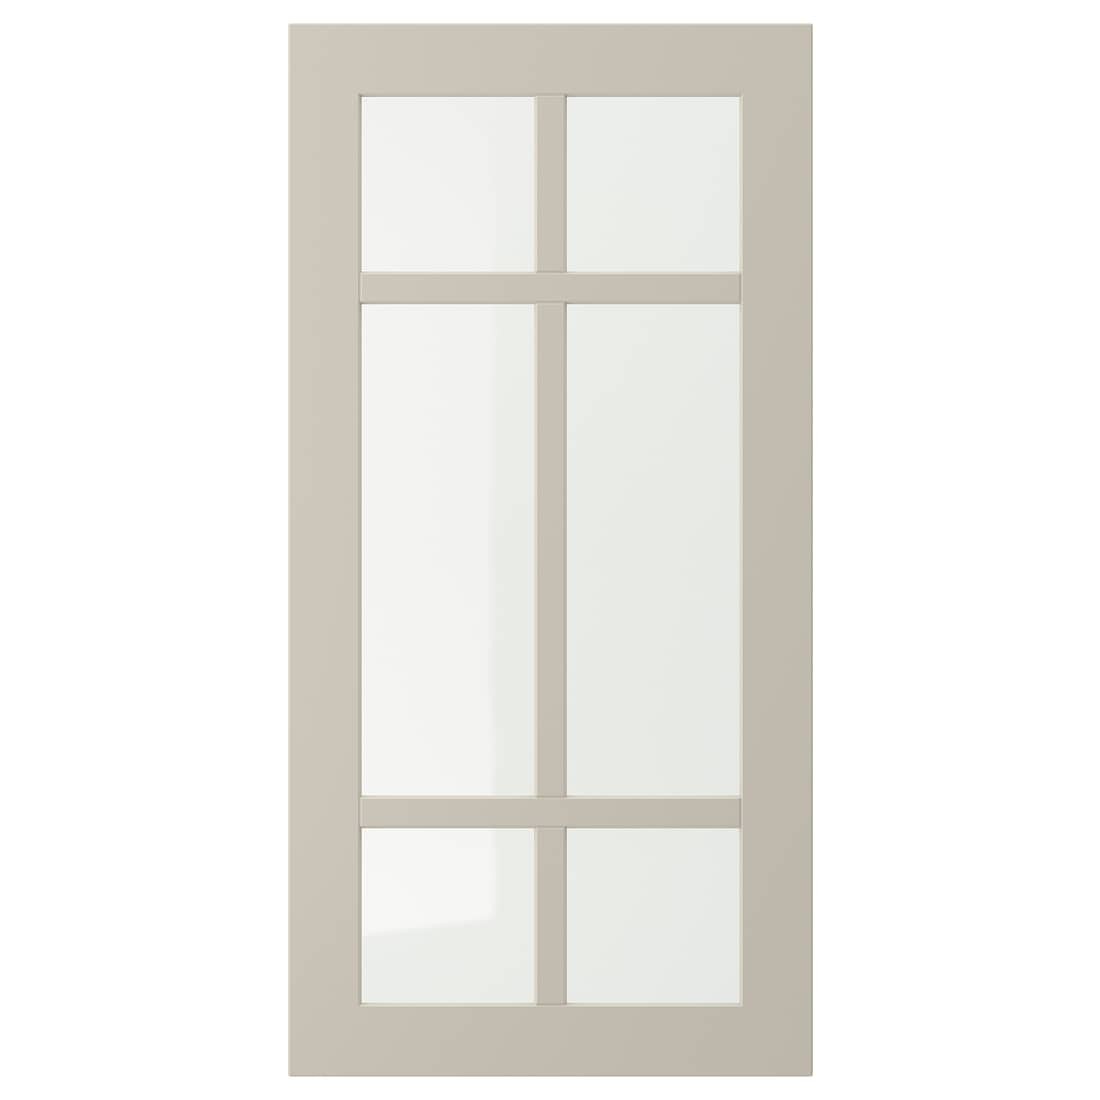 STENSUND СТЕНСУНД Стеклянная дверь, бежевый, 40x80 см